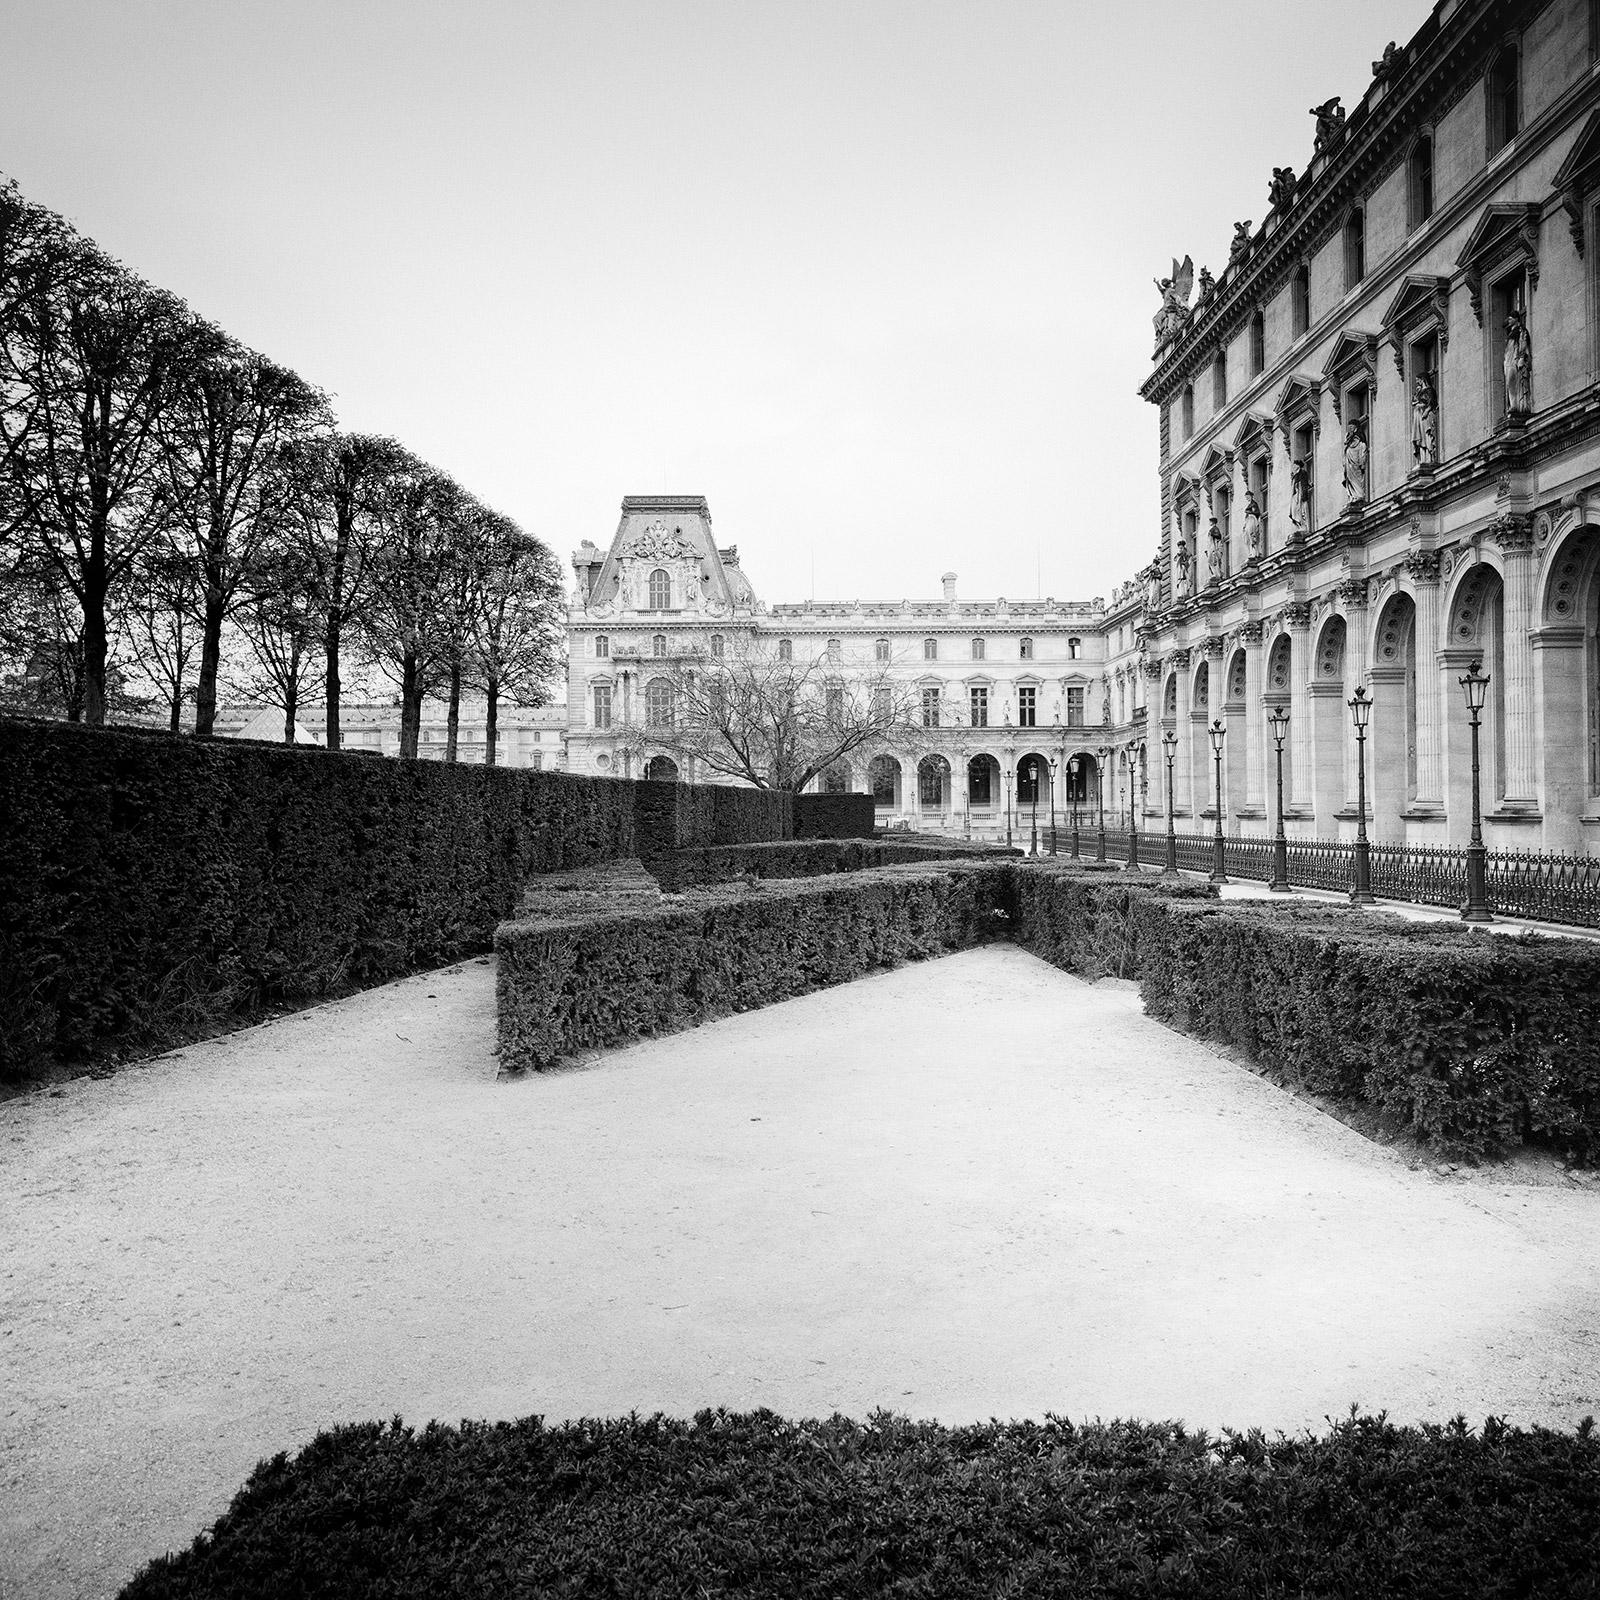 Louvre, Tree Avenue, Paris, France, photographie noir et blanc, paysage urbain